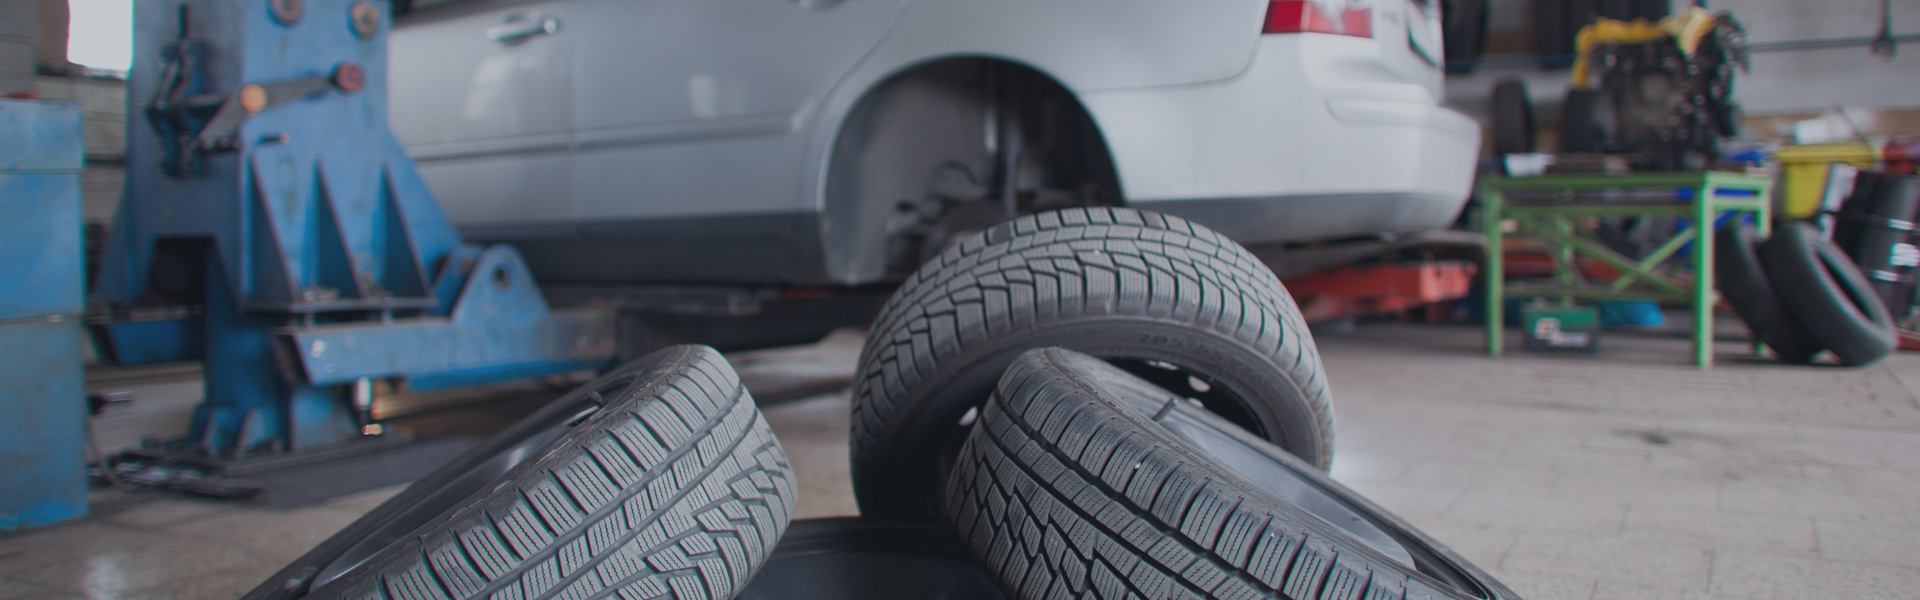 Предлагаме голям асортимент от автомобилни гуми / НОВИ И ВТОРА/ употреба. За тях ние извършваме баланс, монтаж и демонтаж.